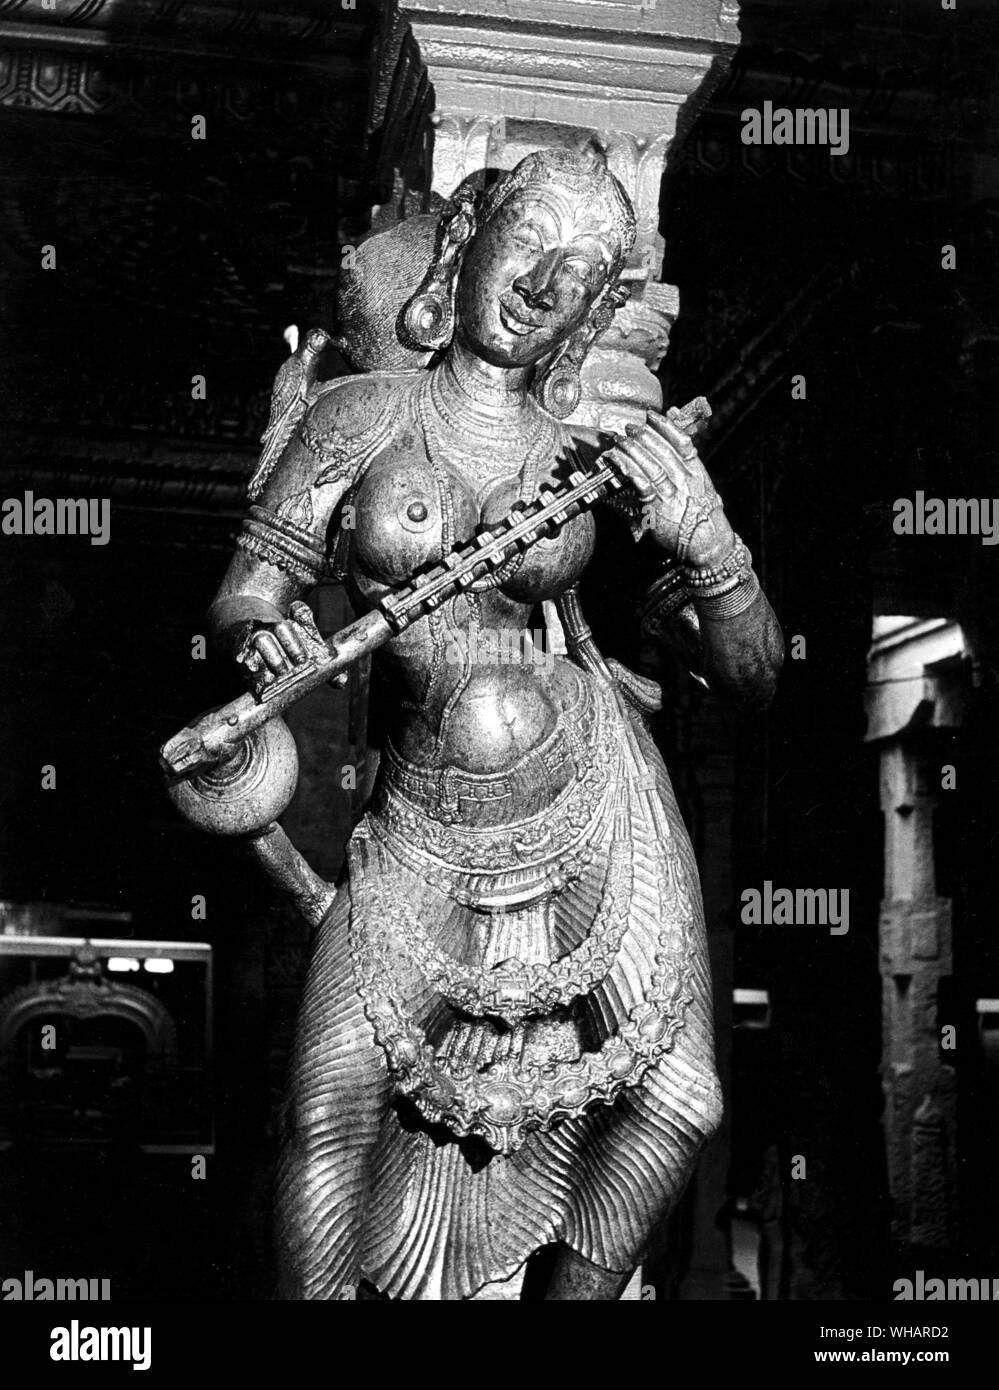 Madunai. Saraswathy déesse de la sagesse avec Veena. Saraswati, la déesse de la sagesse, l'art et la musique est la fille du Seigneur Shiva et de la Déesse Durga. On pense que Déesse Saraswati dote les êtres humains avec les pouvoirs de la parole, de la sagesse et de l'apprentissage. Elle a quatre mains représentant quatre aspects de la personnalité humaine dans l'apprentissage : l'esprit, l'intellect, de la vigilance et de l'ego. Elle a Saintes Ecritures dans une main et un lotus - le symbole de la vraie connaissance - dans la seconde. Avec ses deux autres mains elle joue la musique de l'amour et la vie sur un instrument à cordes appelé la veena. Elle est vêtue de blanc - le Banque D'Images